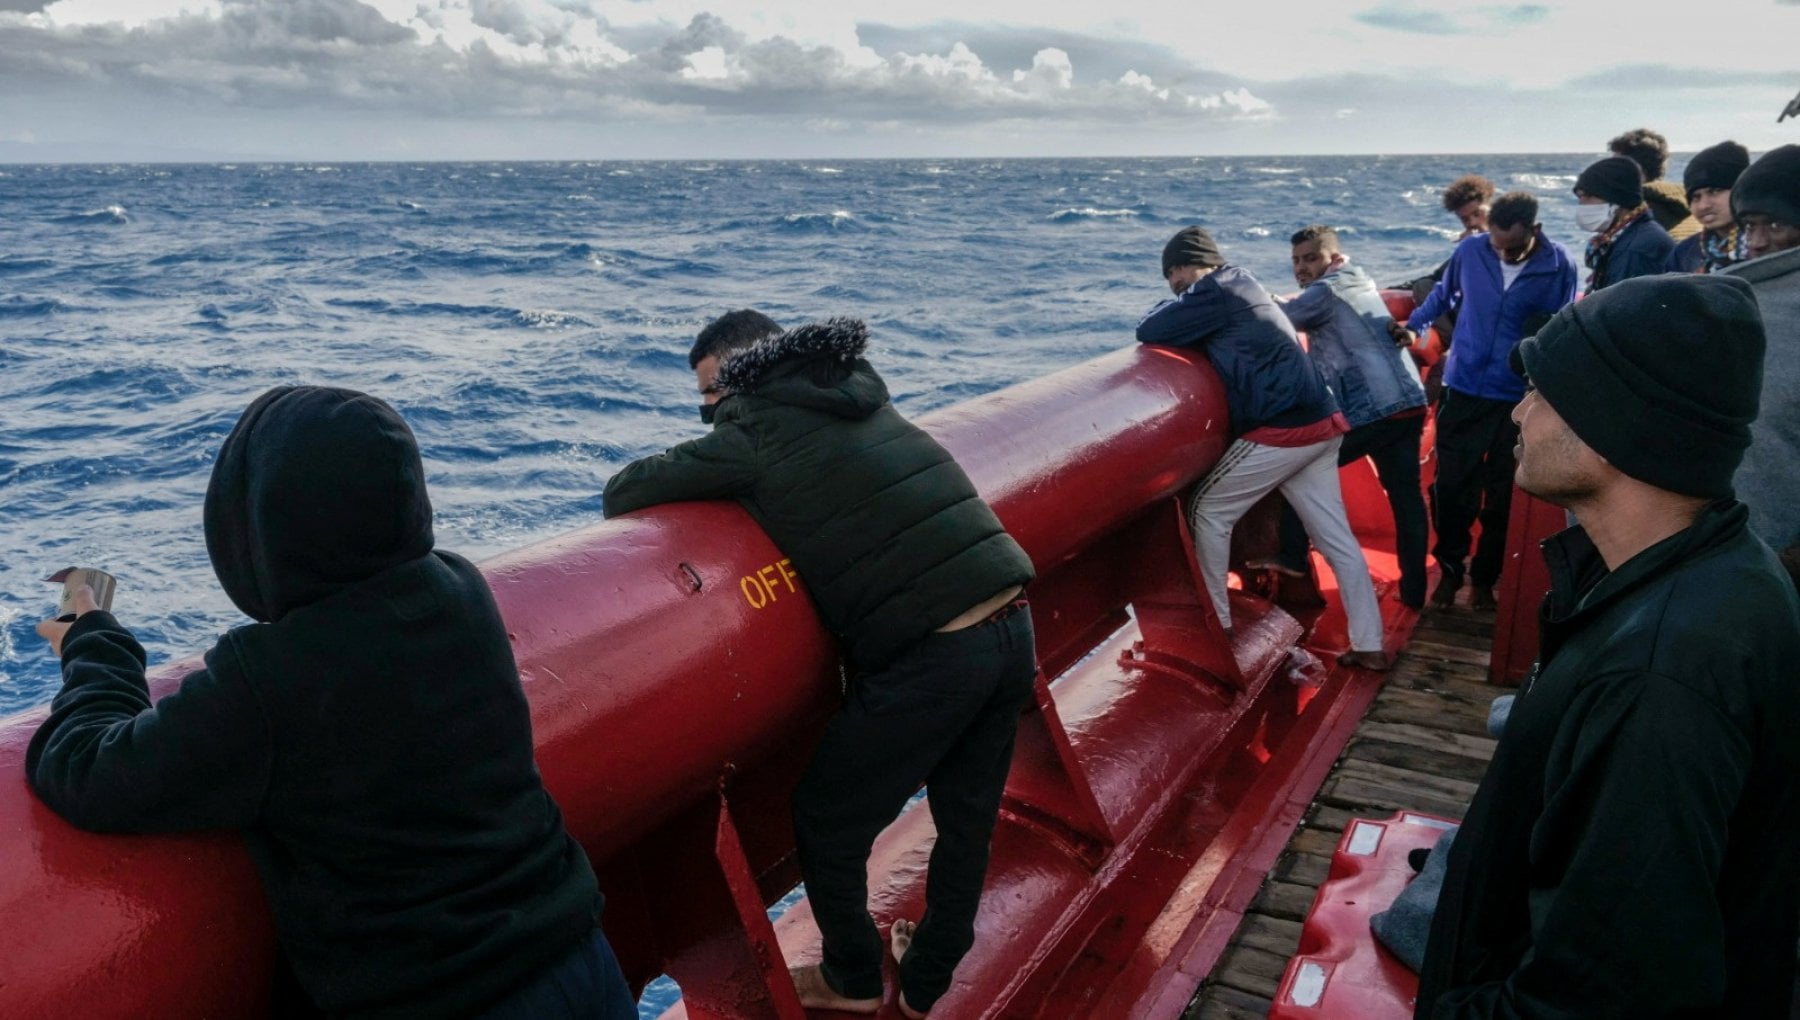 La nave Ocean Viking accolta in Francia. Macron: “Ma dall’Italia atti inaccettabili” – la Repubblica